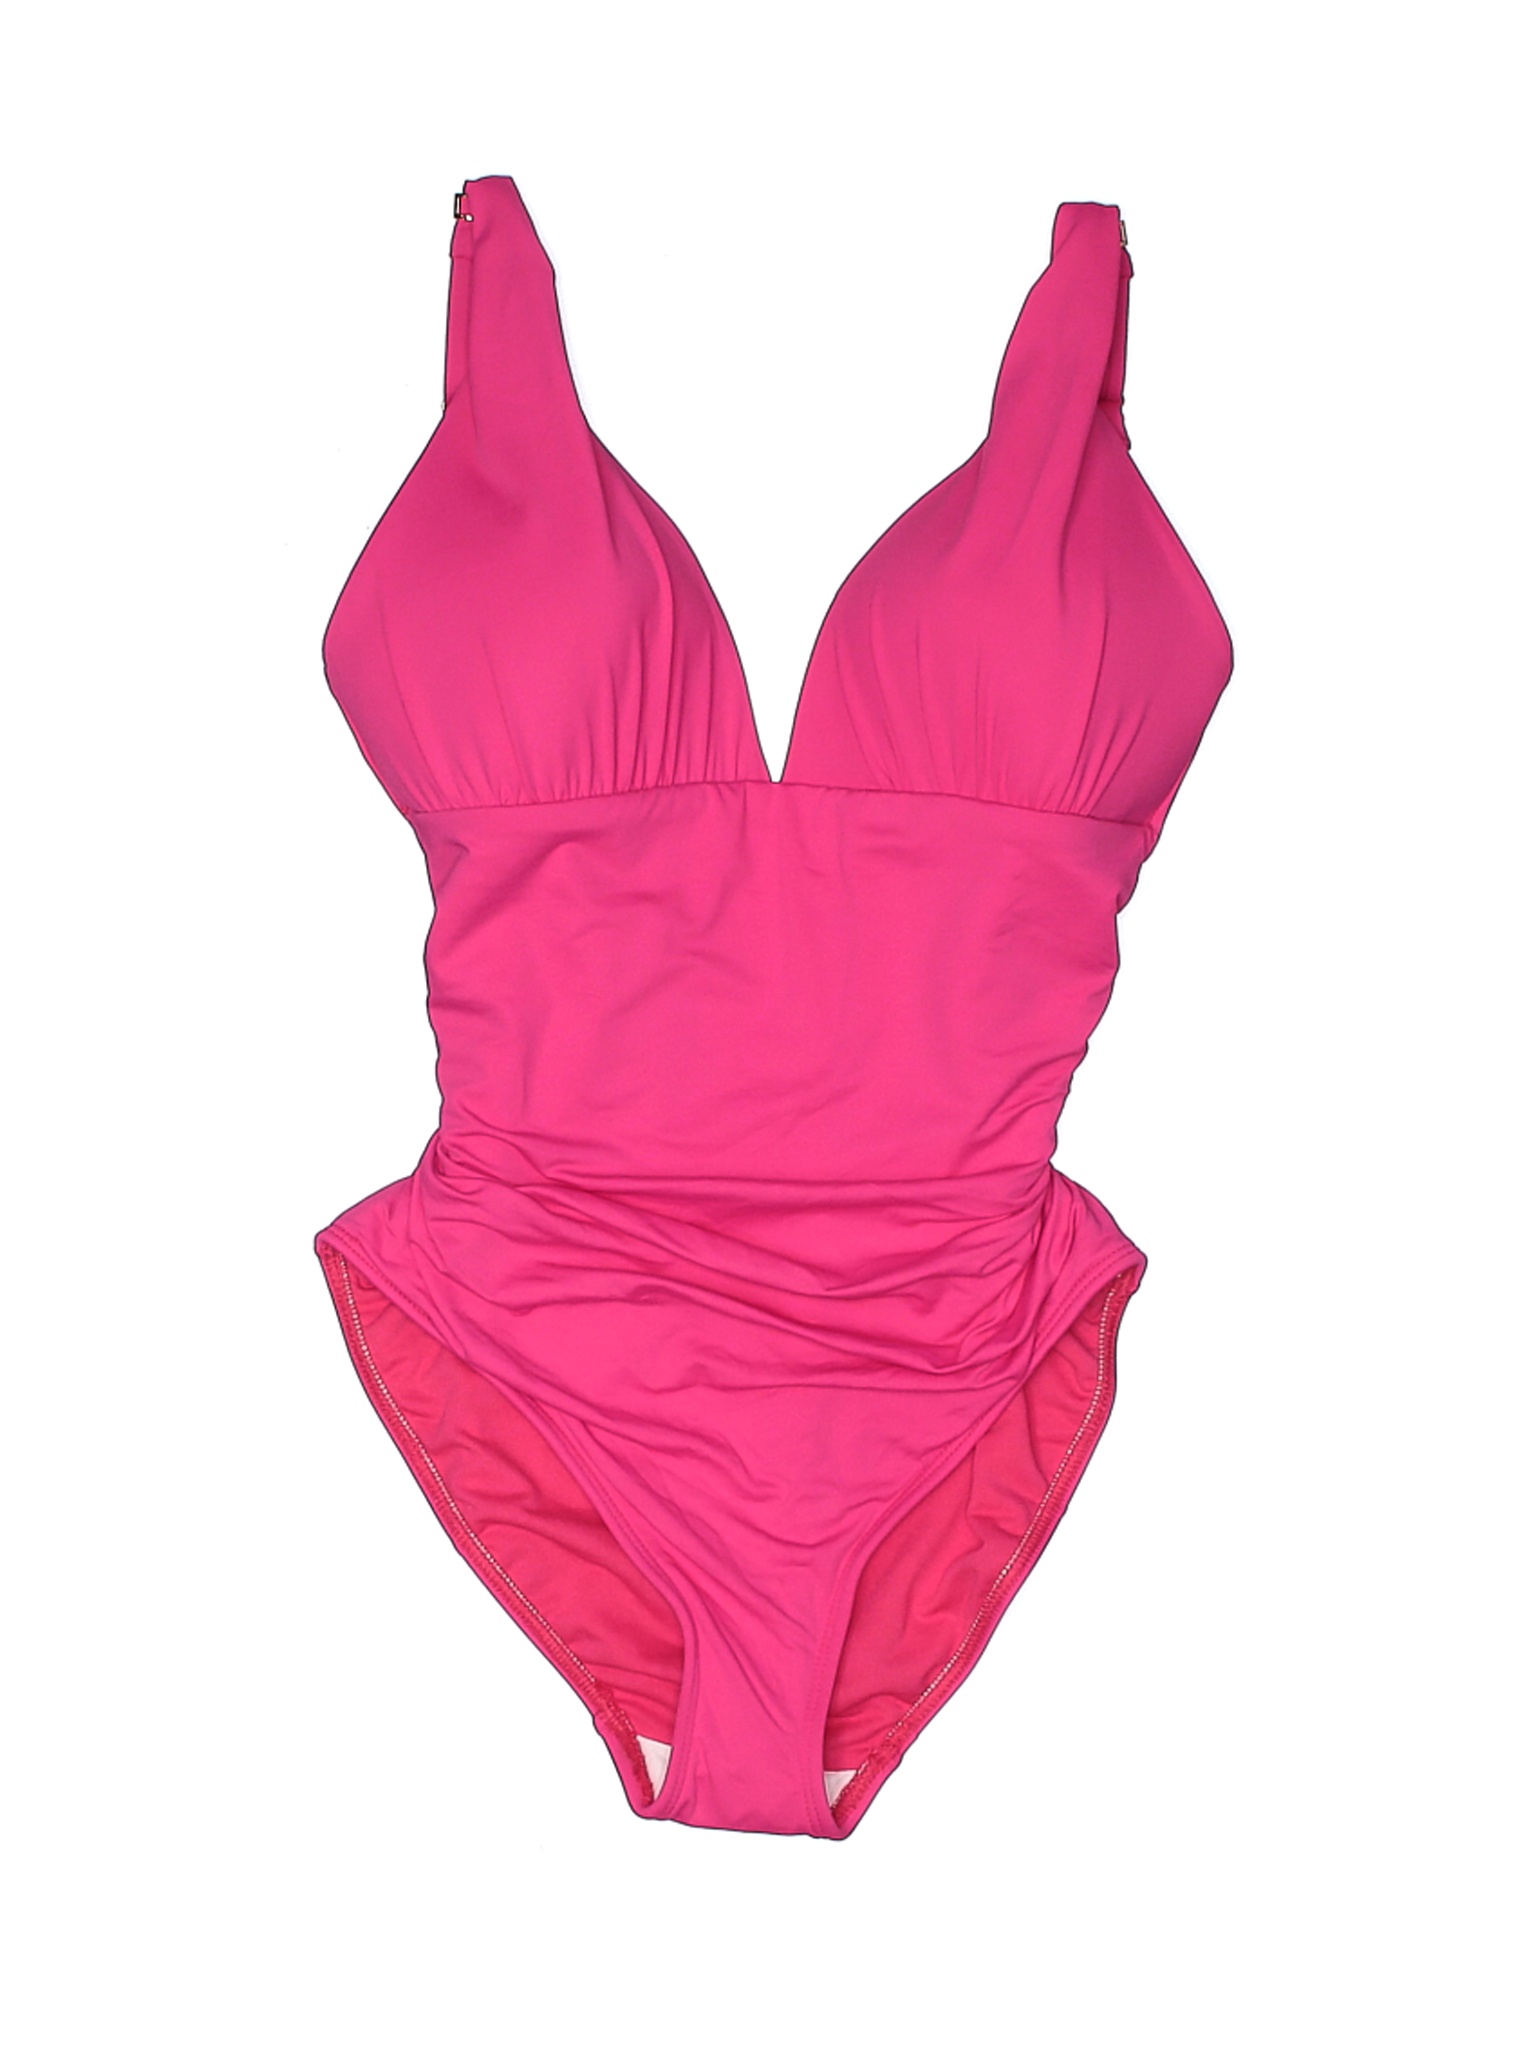 NWT Lauren by Ralph Lauren Women Pink One Piece Swimsuit 4 | eBay